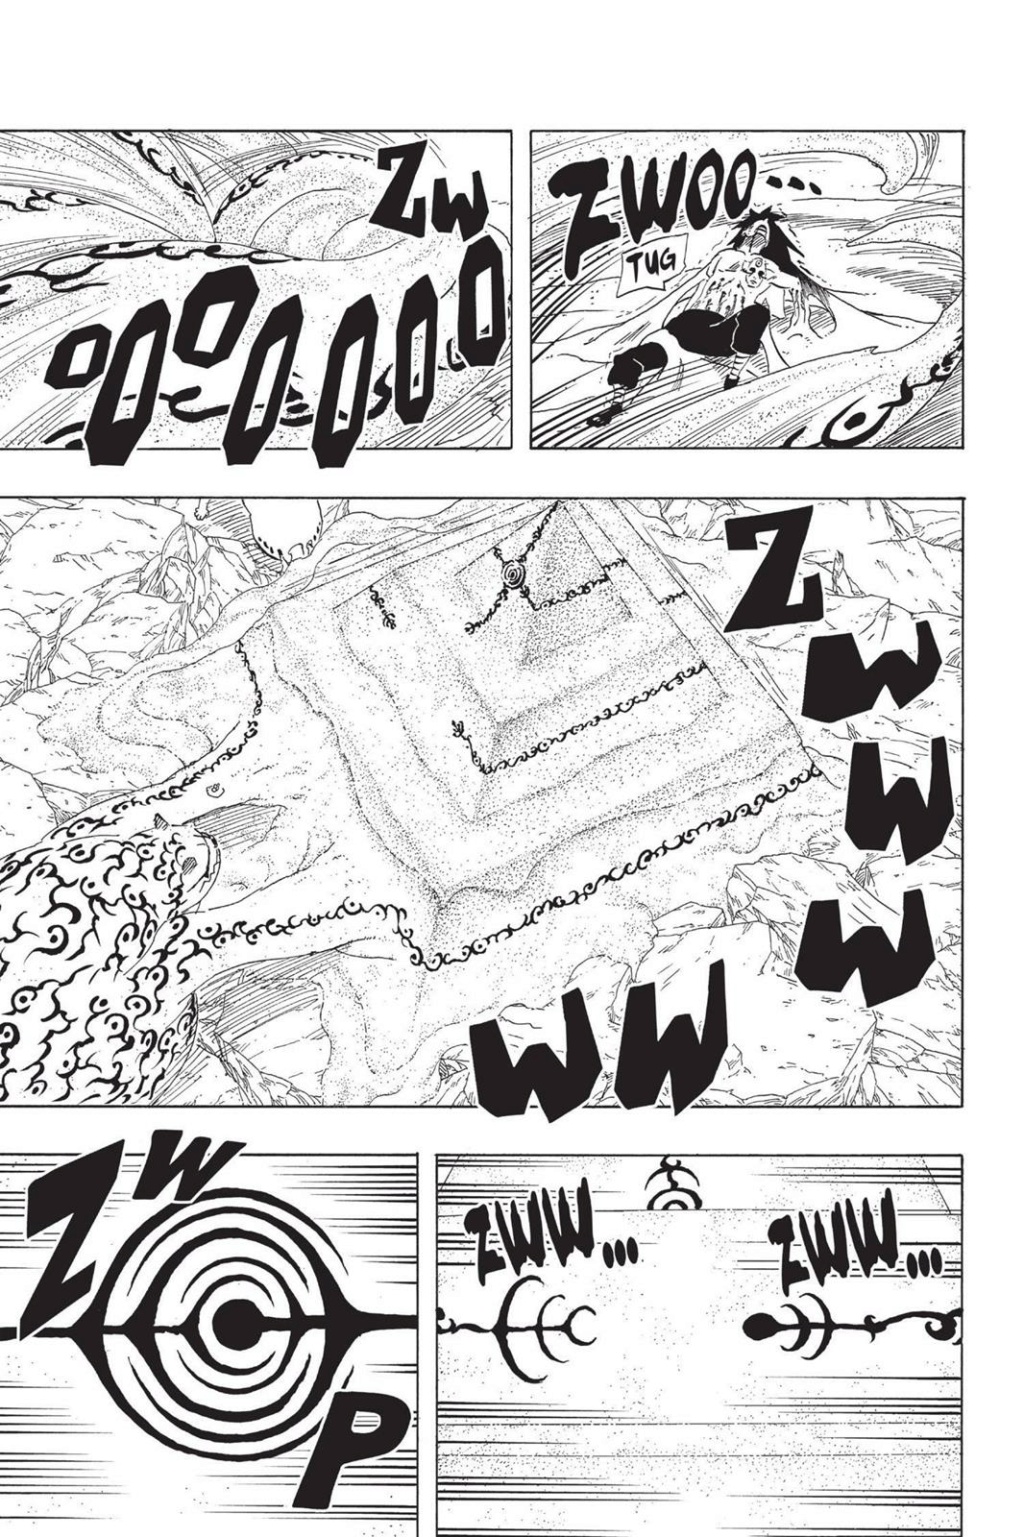 Magatamas e RasenShuriken seriam suficientes para destruir o CT do Edo Nagato? - Página 3 15_410